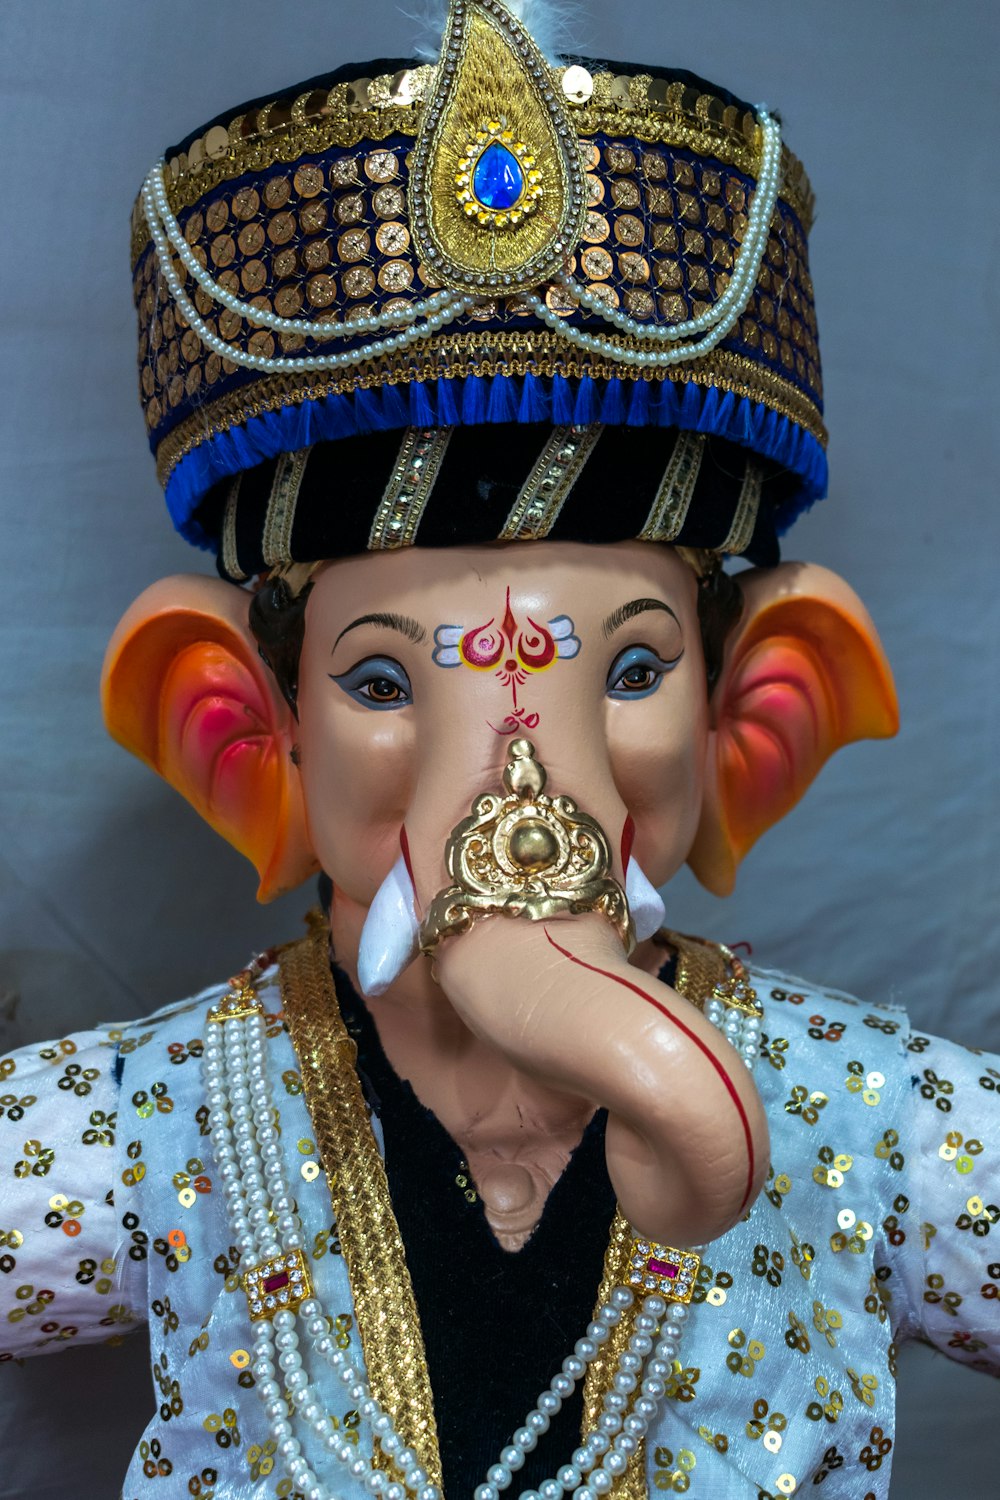 a statue of an elephant wearing a headdress